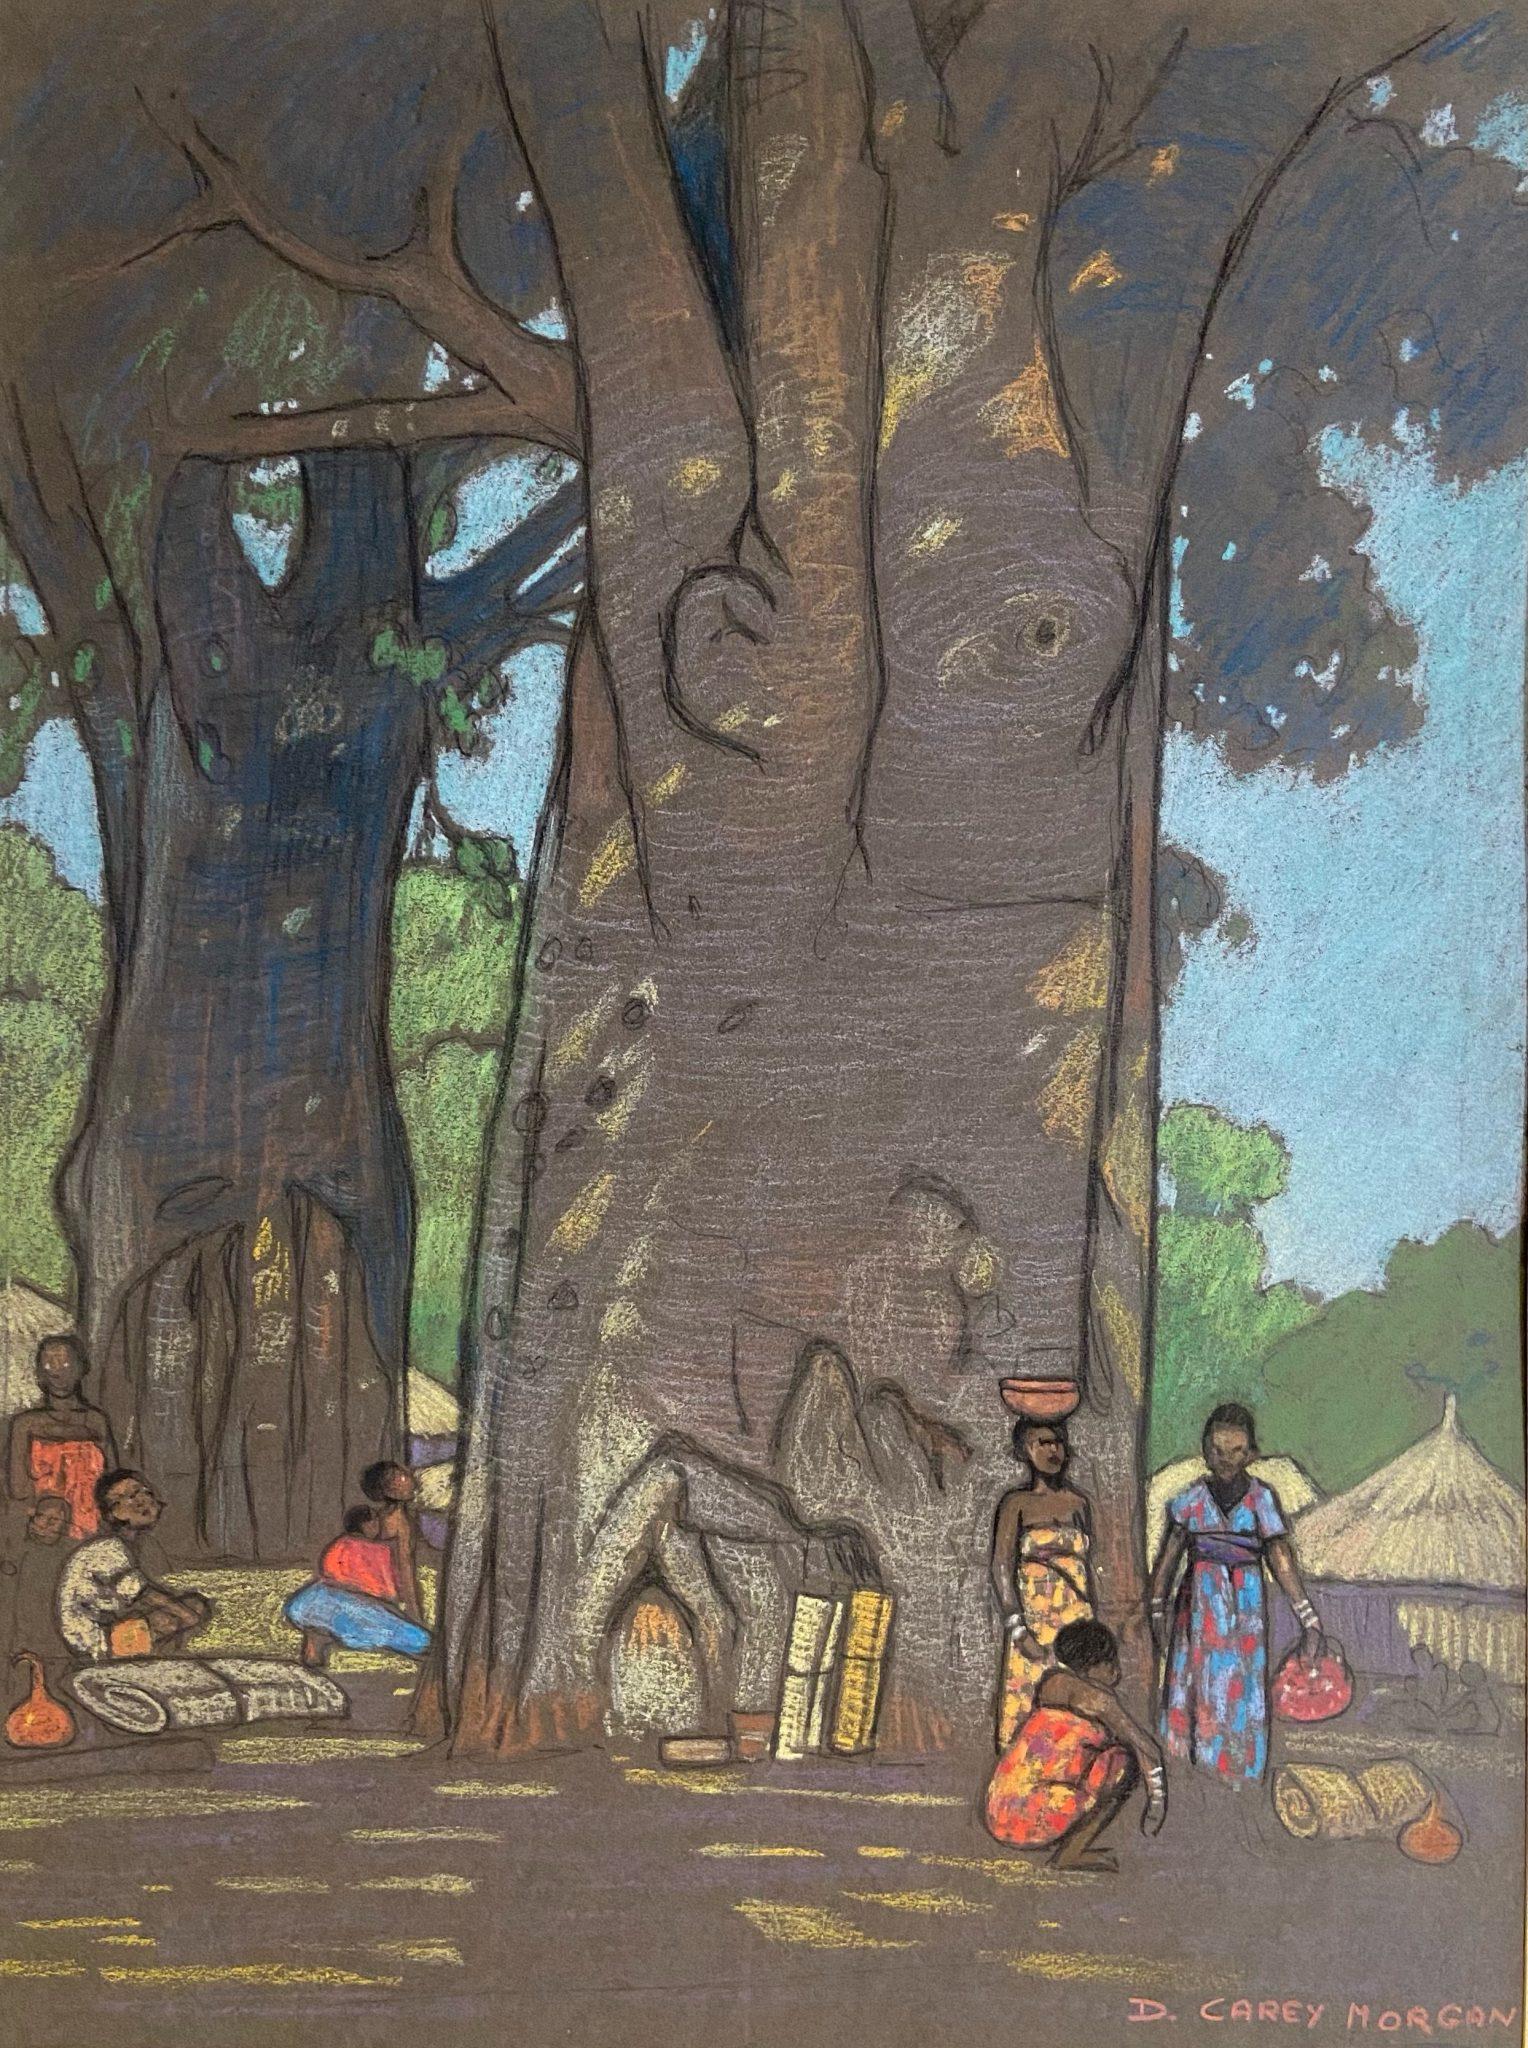 Landscape Art Dorothy Carey Morgan - Paysages africains, œuvres d'art britanniques du 20e siècle